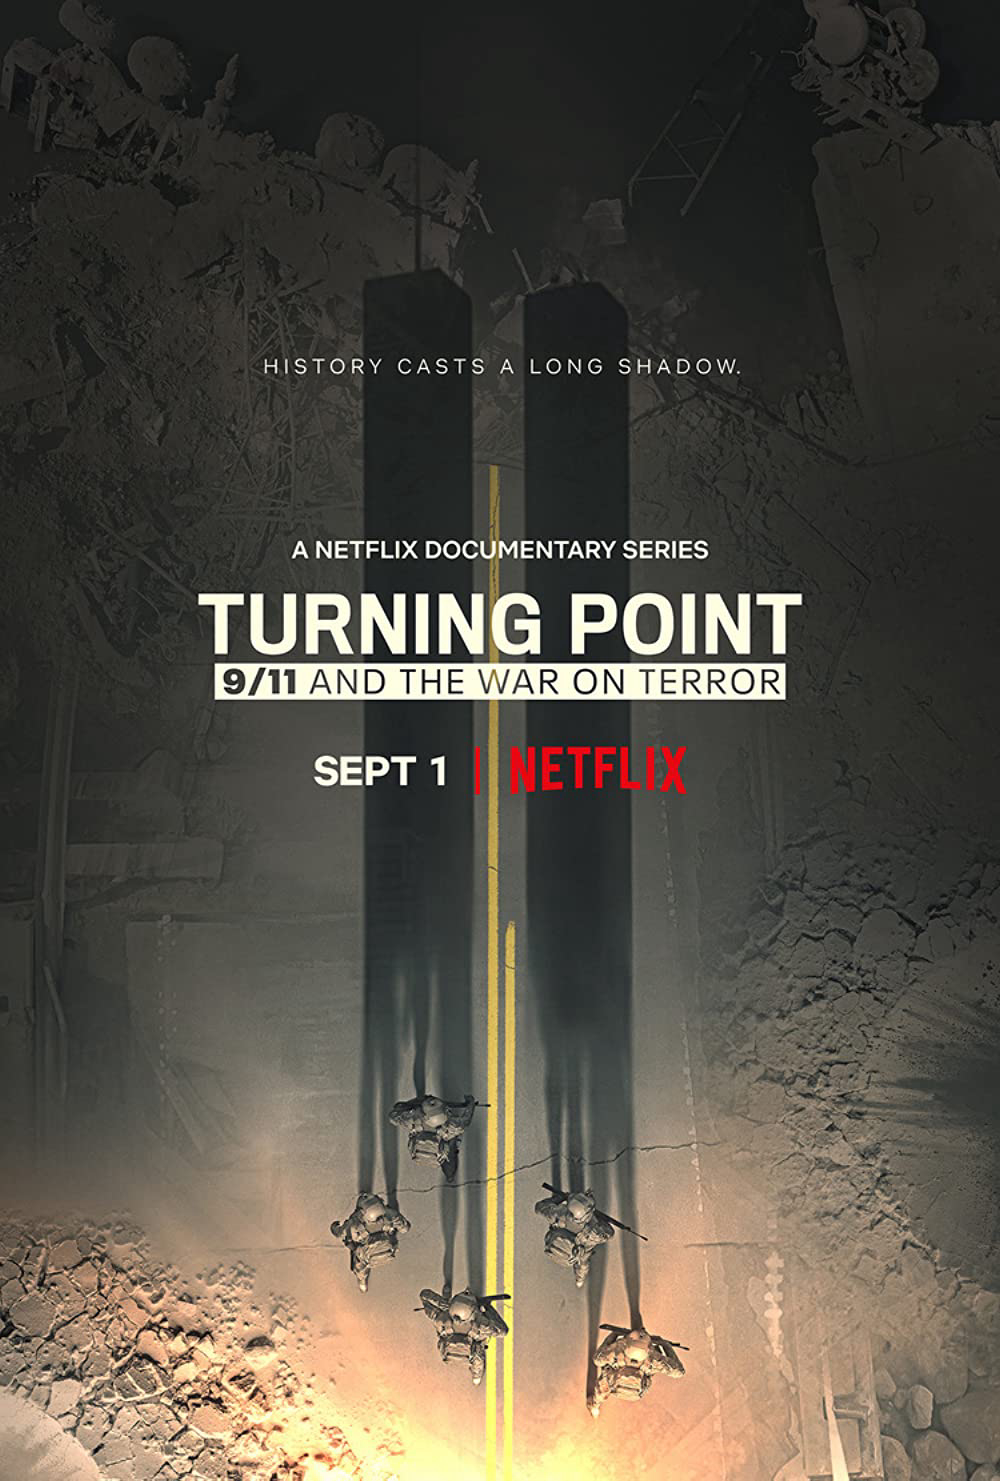 Xem Phim Bước ngoặt: 11 tháng 9 và cuộc chiến chống khủng bố (Turning Point: 9/11 and the War on Terror)